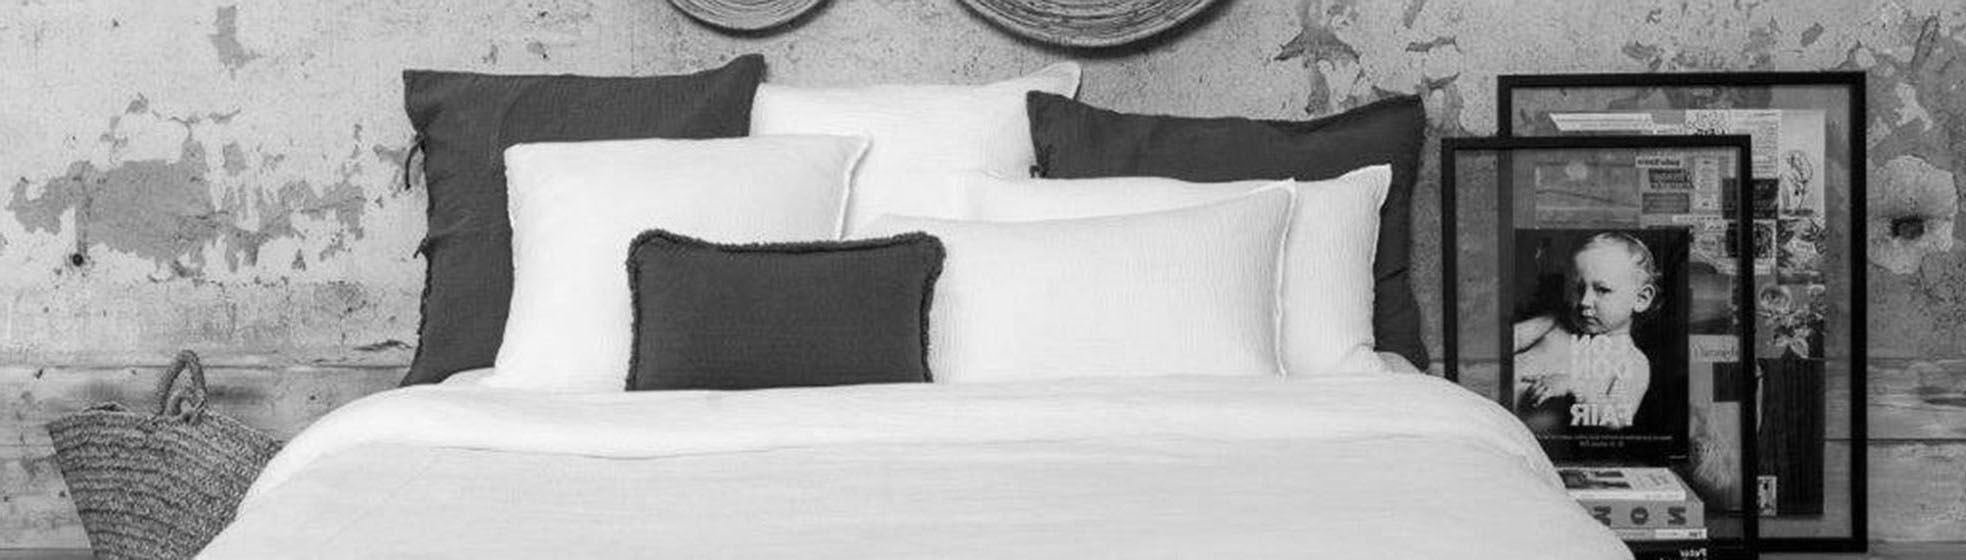 Acheter linge de lit blanc